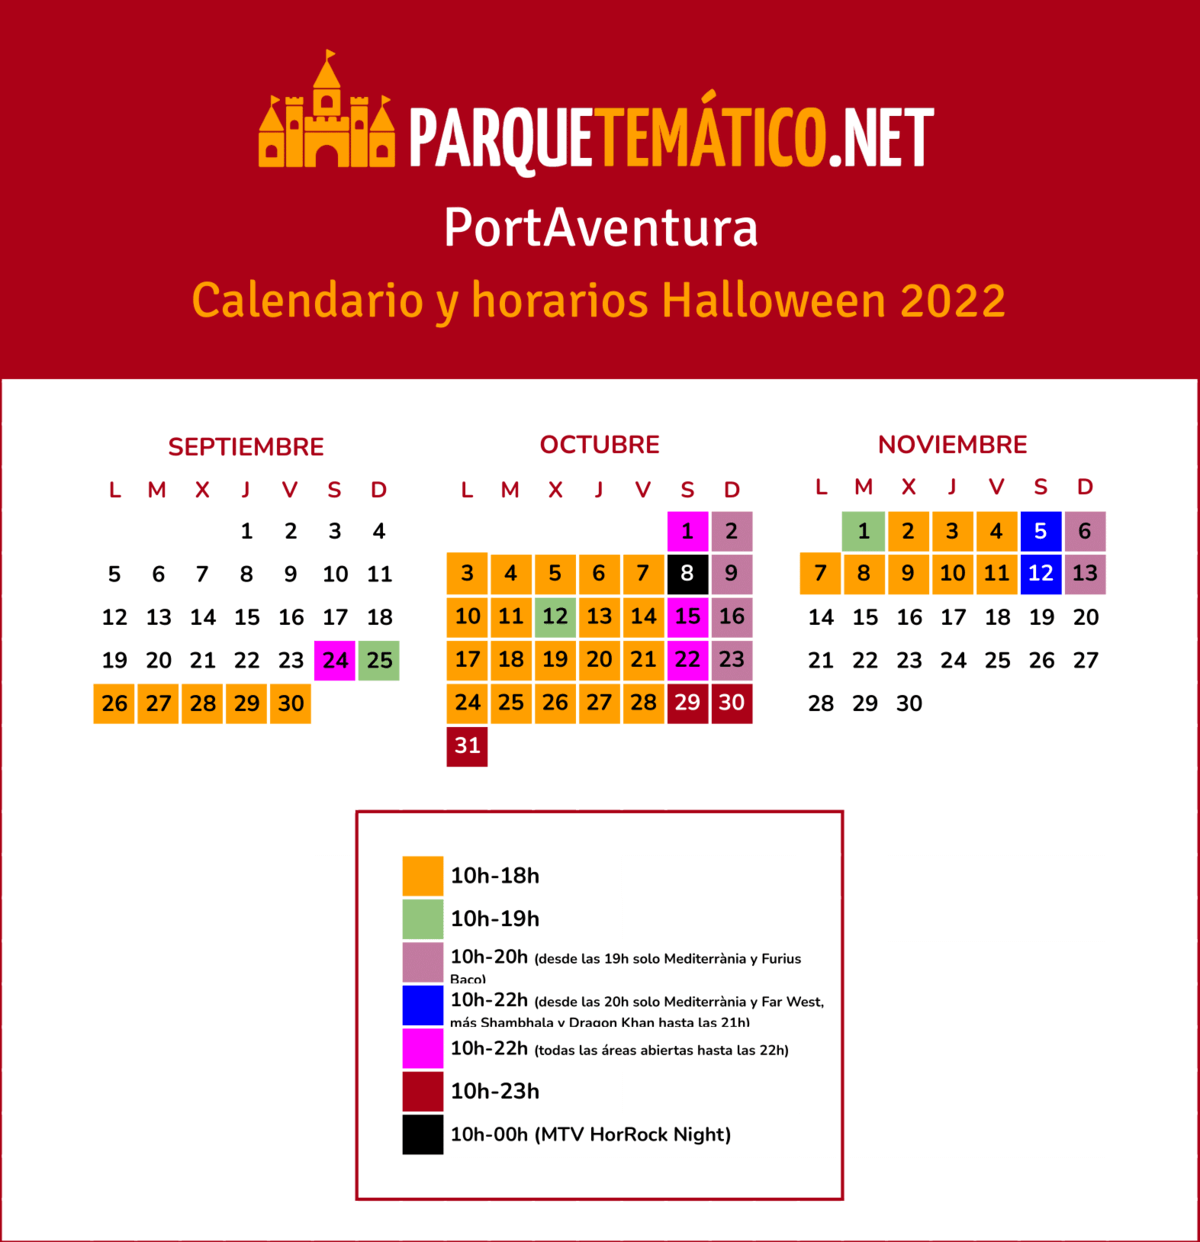 Calendario y horarios de apertura Halloween PortAventura 2022 v3